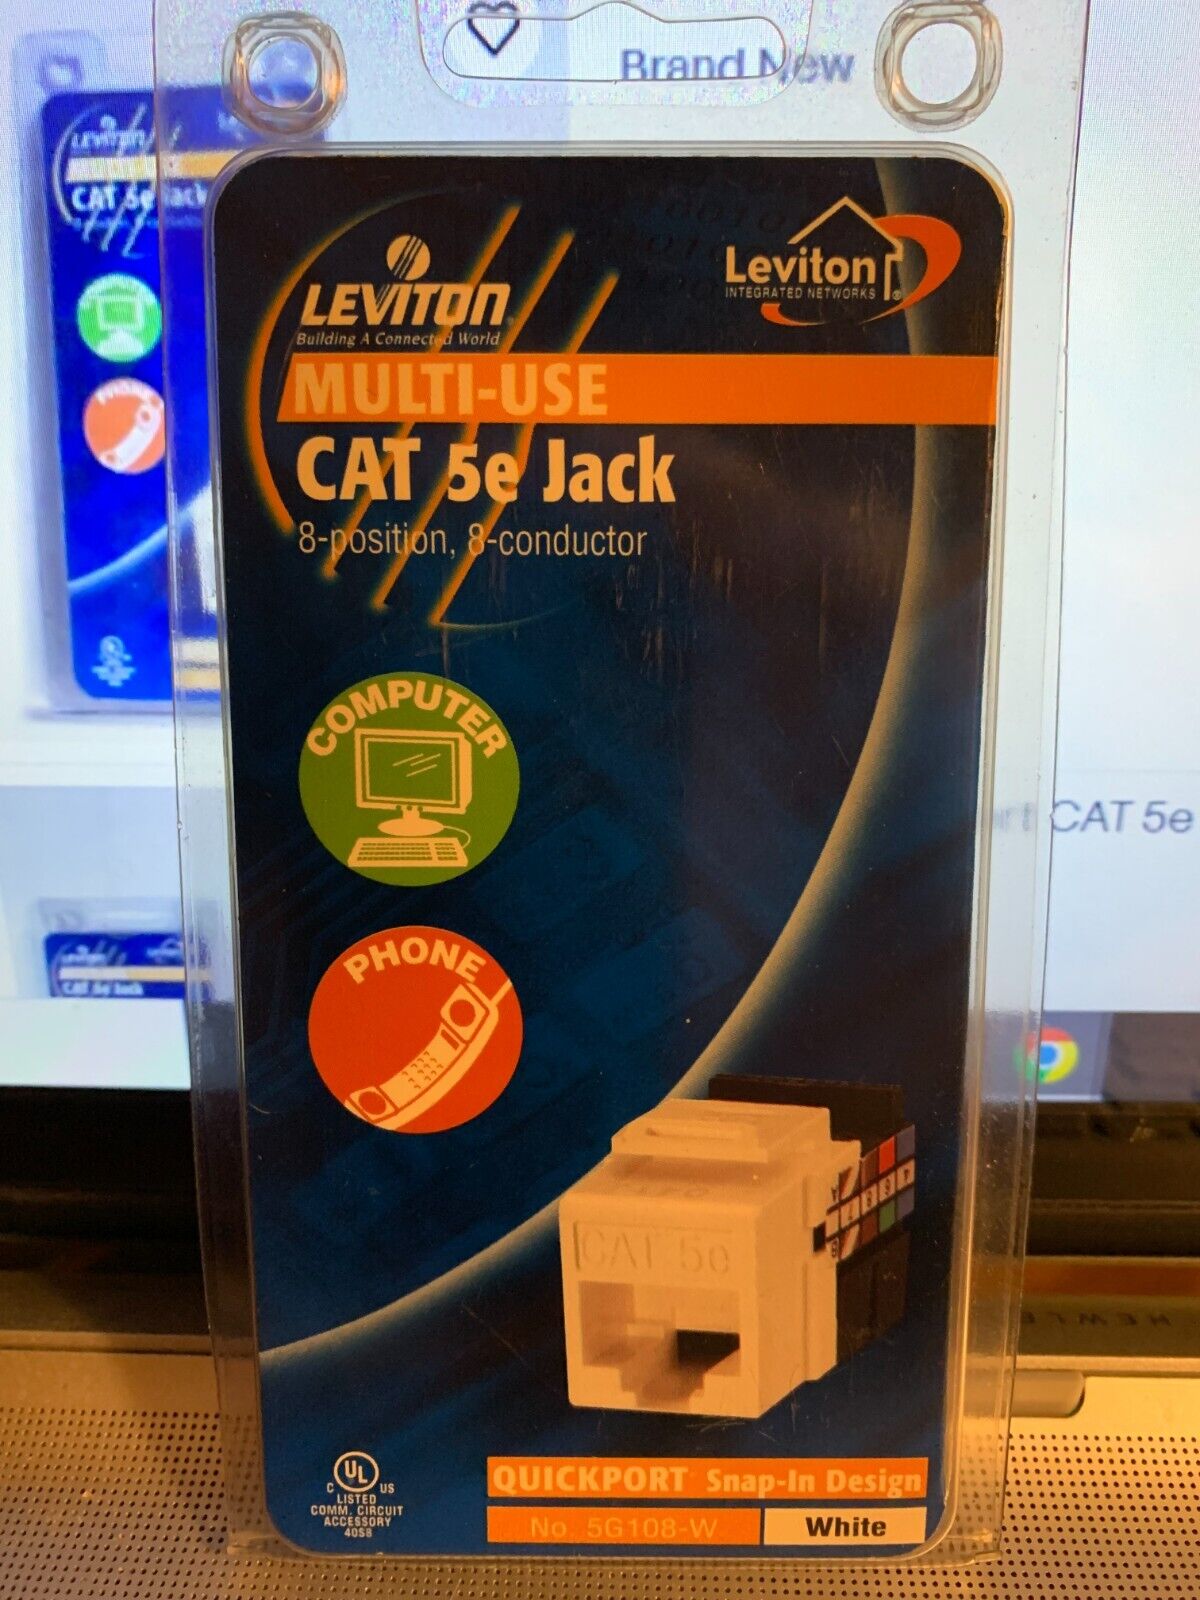 LEVITON JACK Quickport CAT 5e R06-5G108-W Multi-Use White Snap in Design NEW